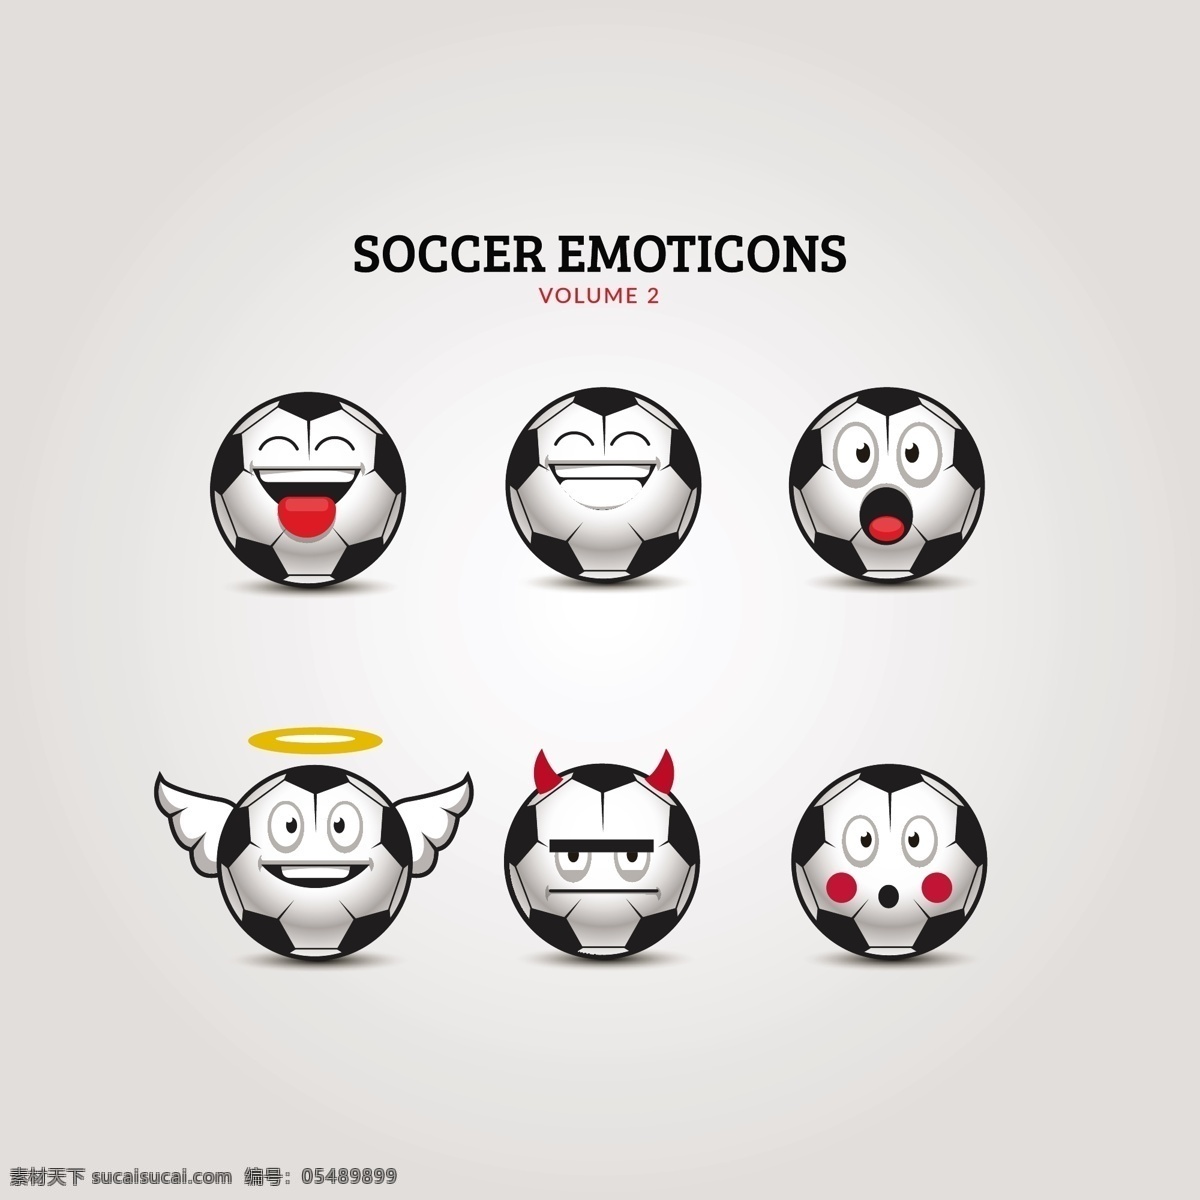 足球 表情 符号 集 图标 运动 漫画 脸 快乐 个性 游戏 团队 眼睛 笑脸 球 玩 好玩 有趣 卡通人物 白色